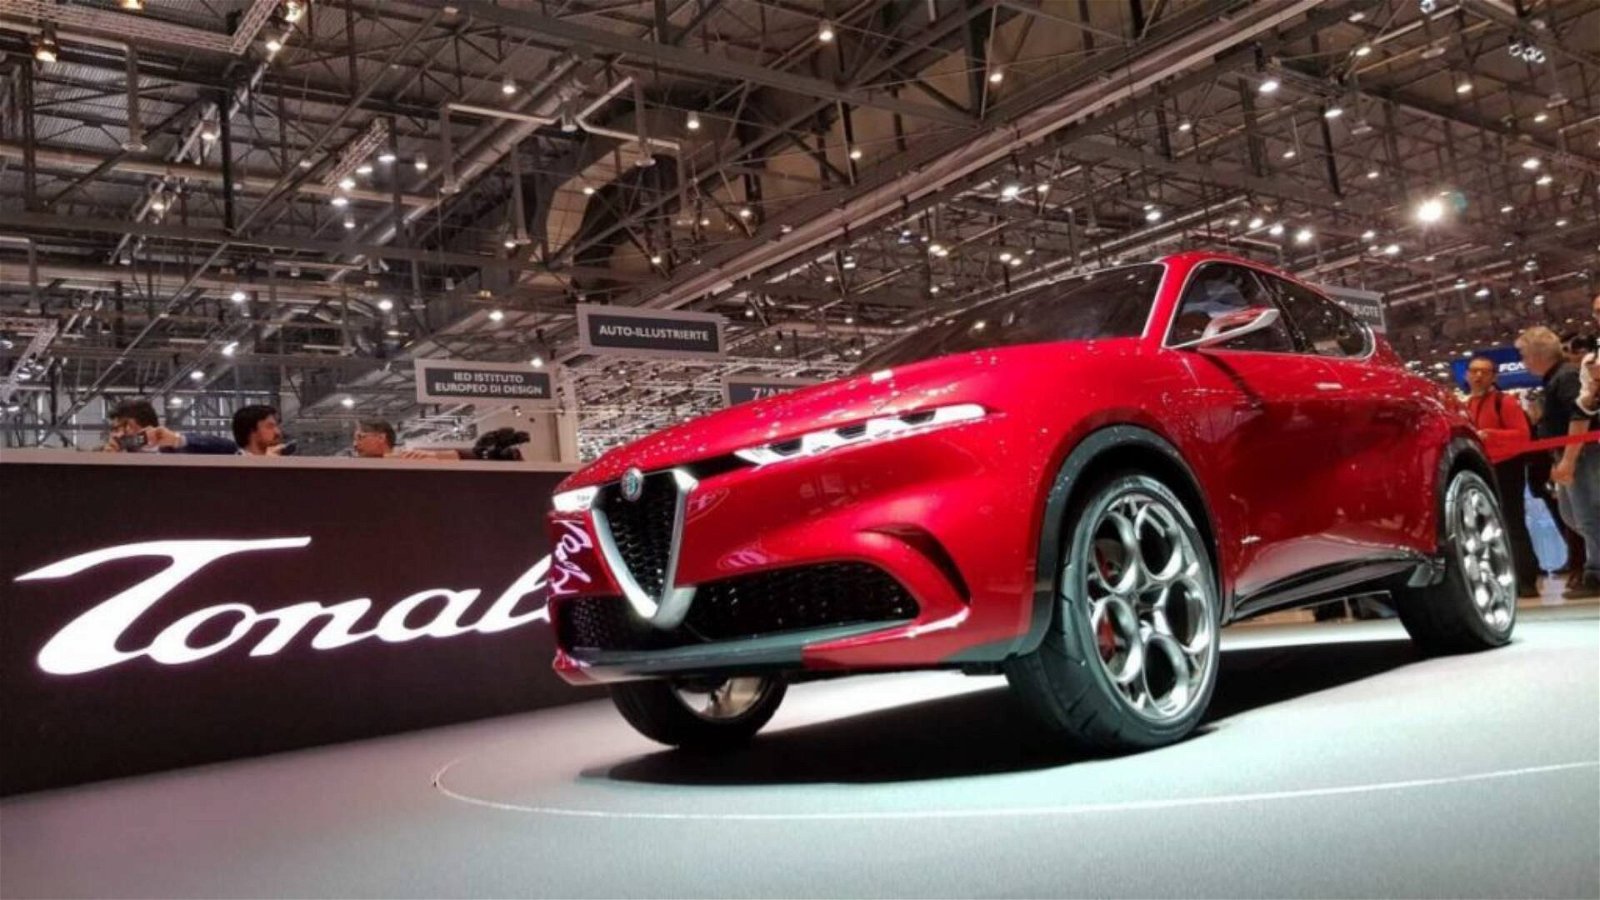 Immagine di Alfa Romeo, sino al 2026 debutterà un nuovo modello ogni anno